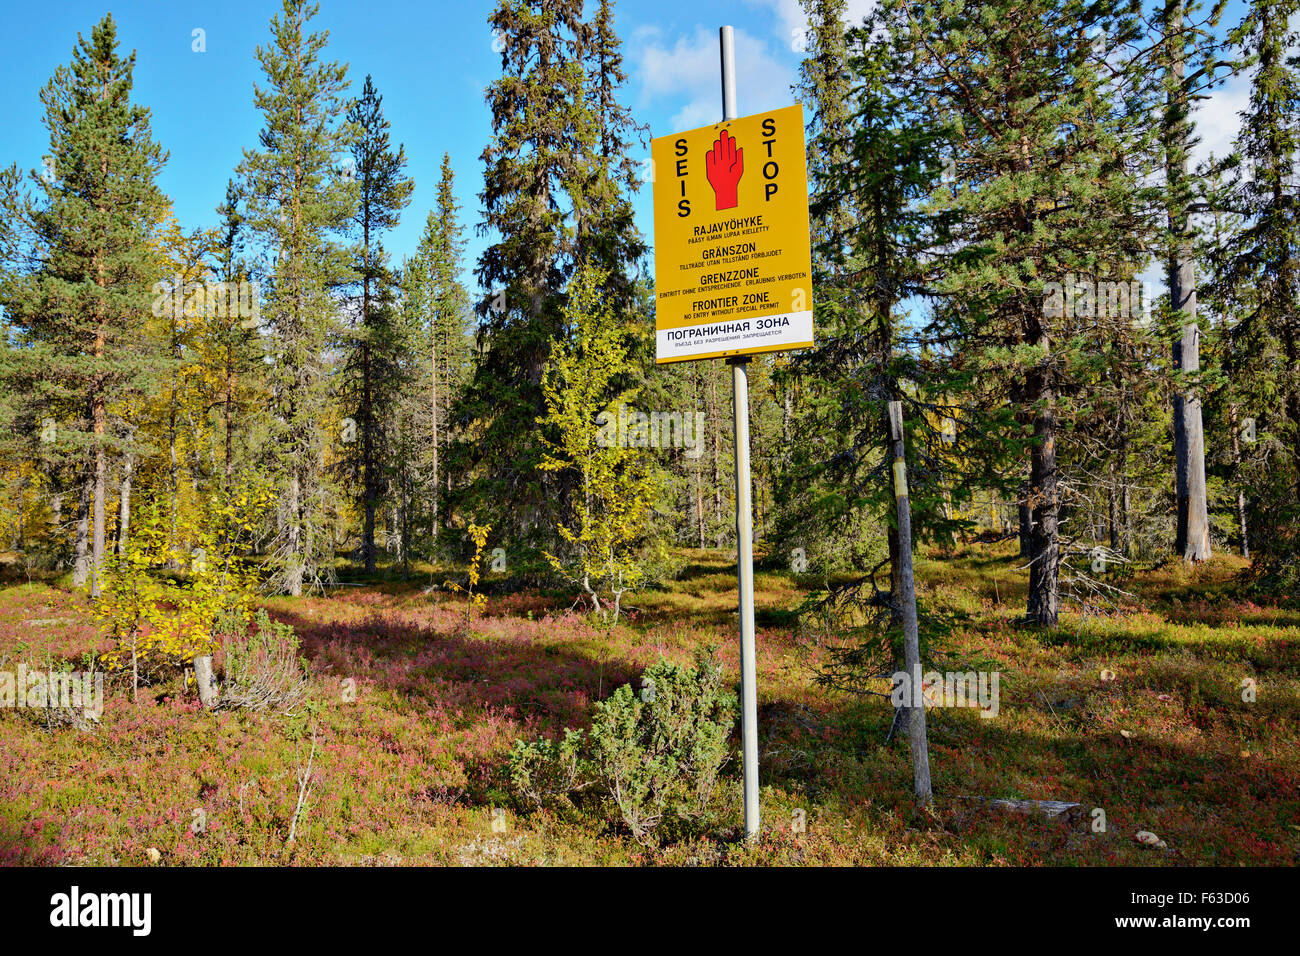 Couleurs d'automne au début de septembre. Zone de restriction sur la frontière russe. Le Parc National Urho Kekkonen, Laponie, Finlande. Banque D'Images